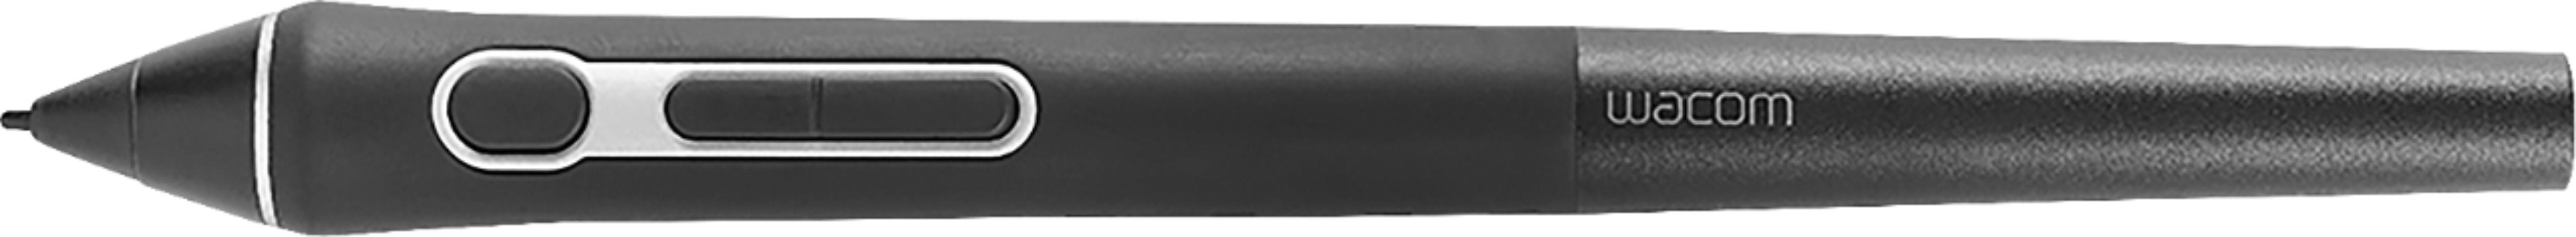 Wacom - Pro Pen 3D Stylus - Black